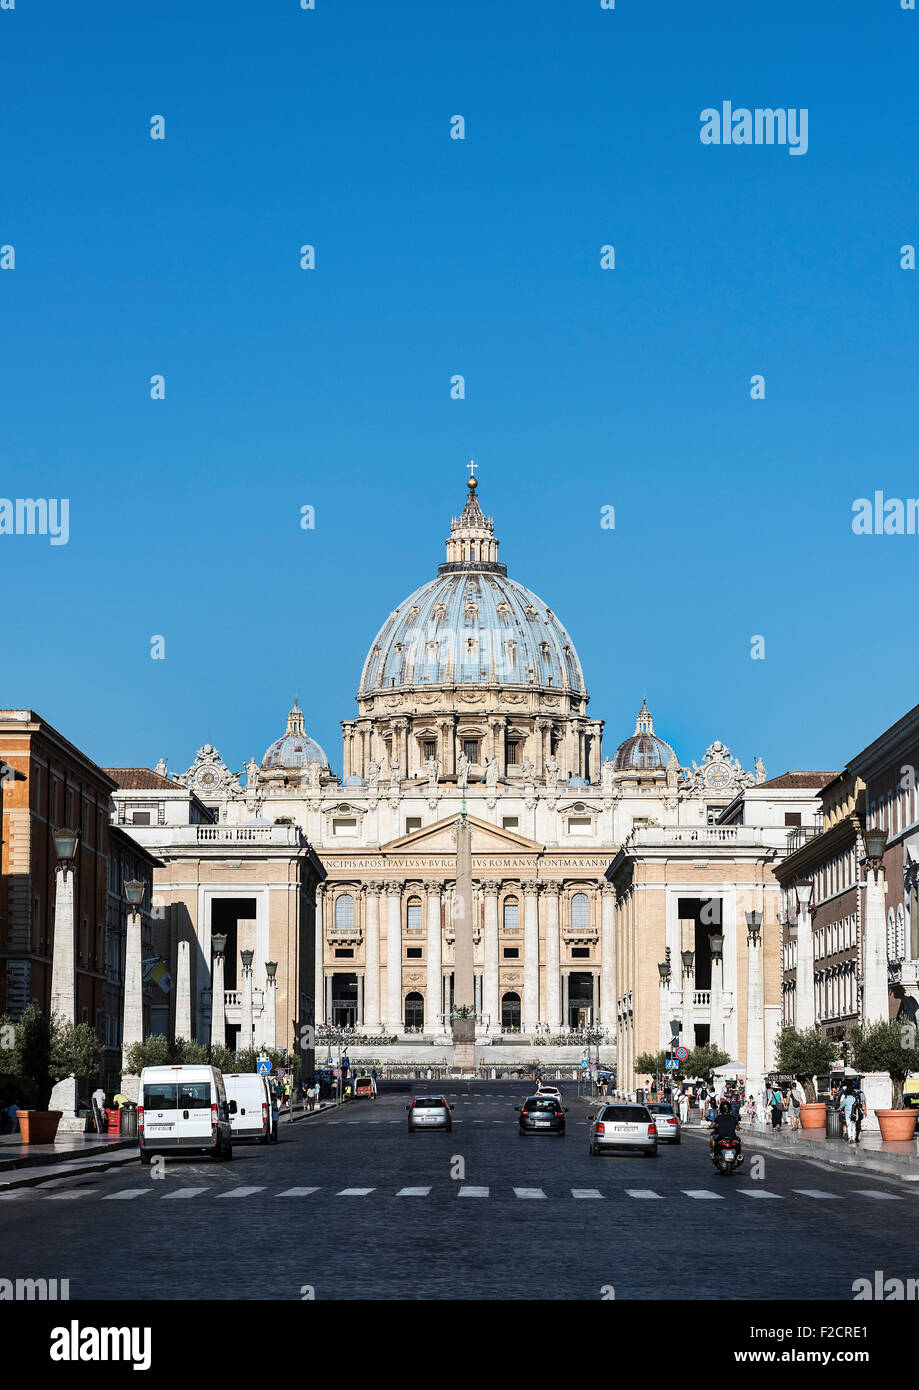 St. Peter's Basilica as seen from the Via della Conciliazione, Rome, Italy Stock Photo